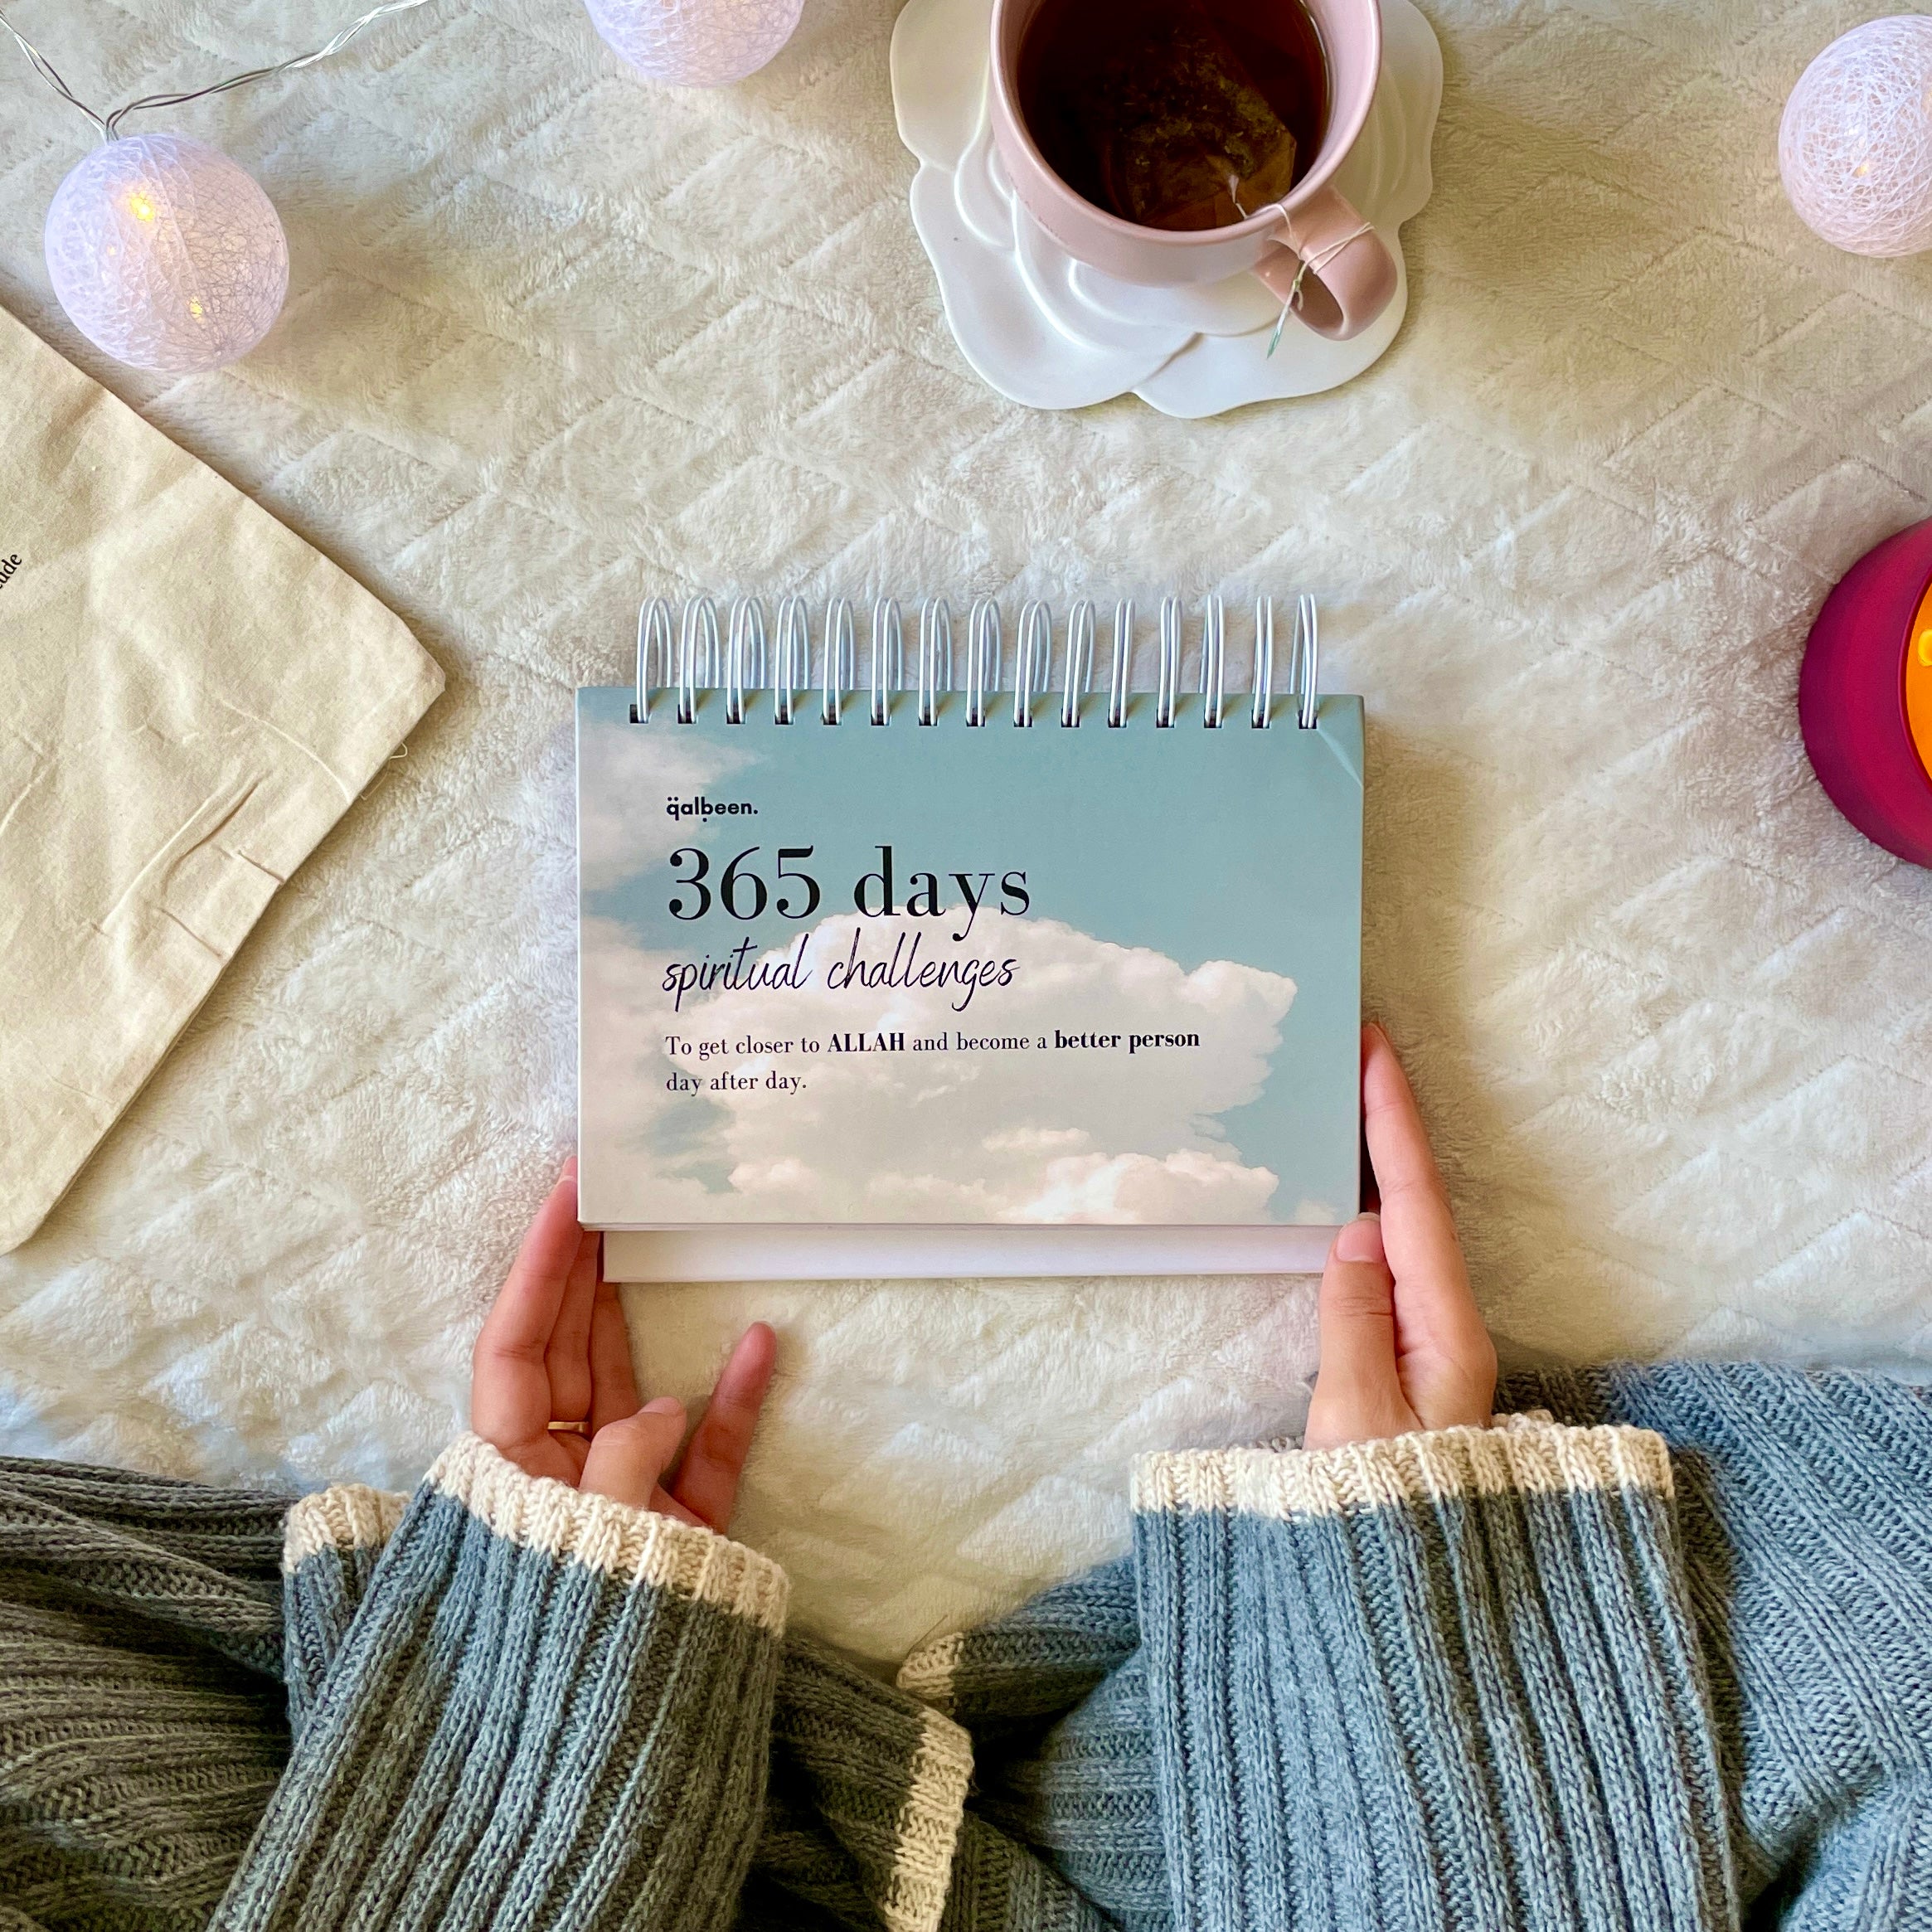 Noor : 365 Days Calendar of Spiritual Challenges